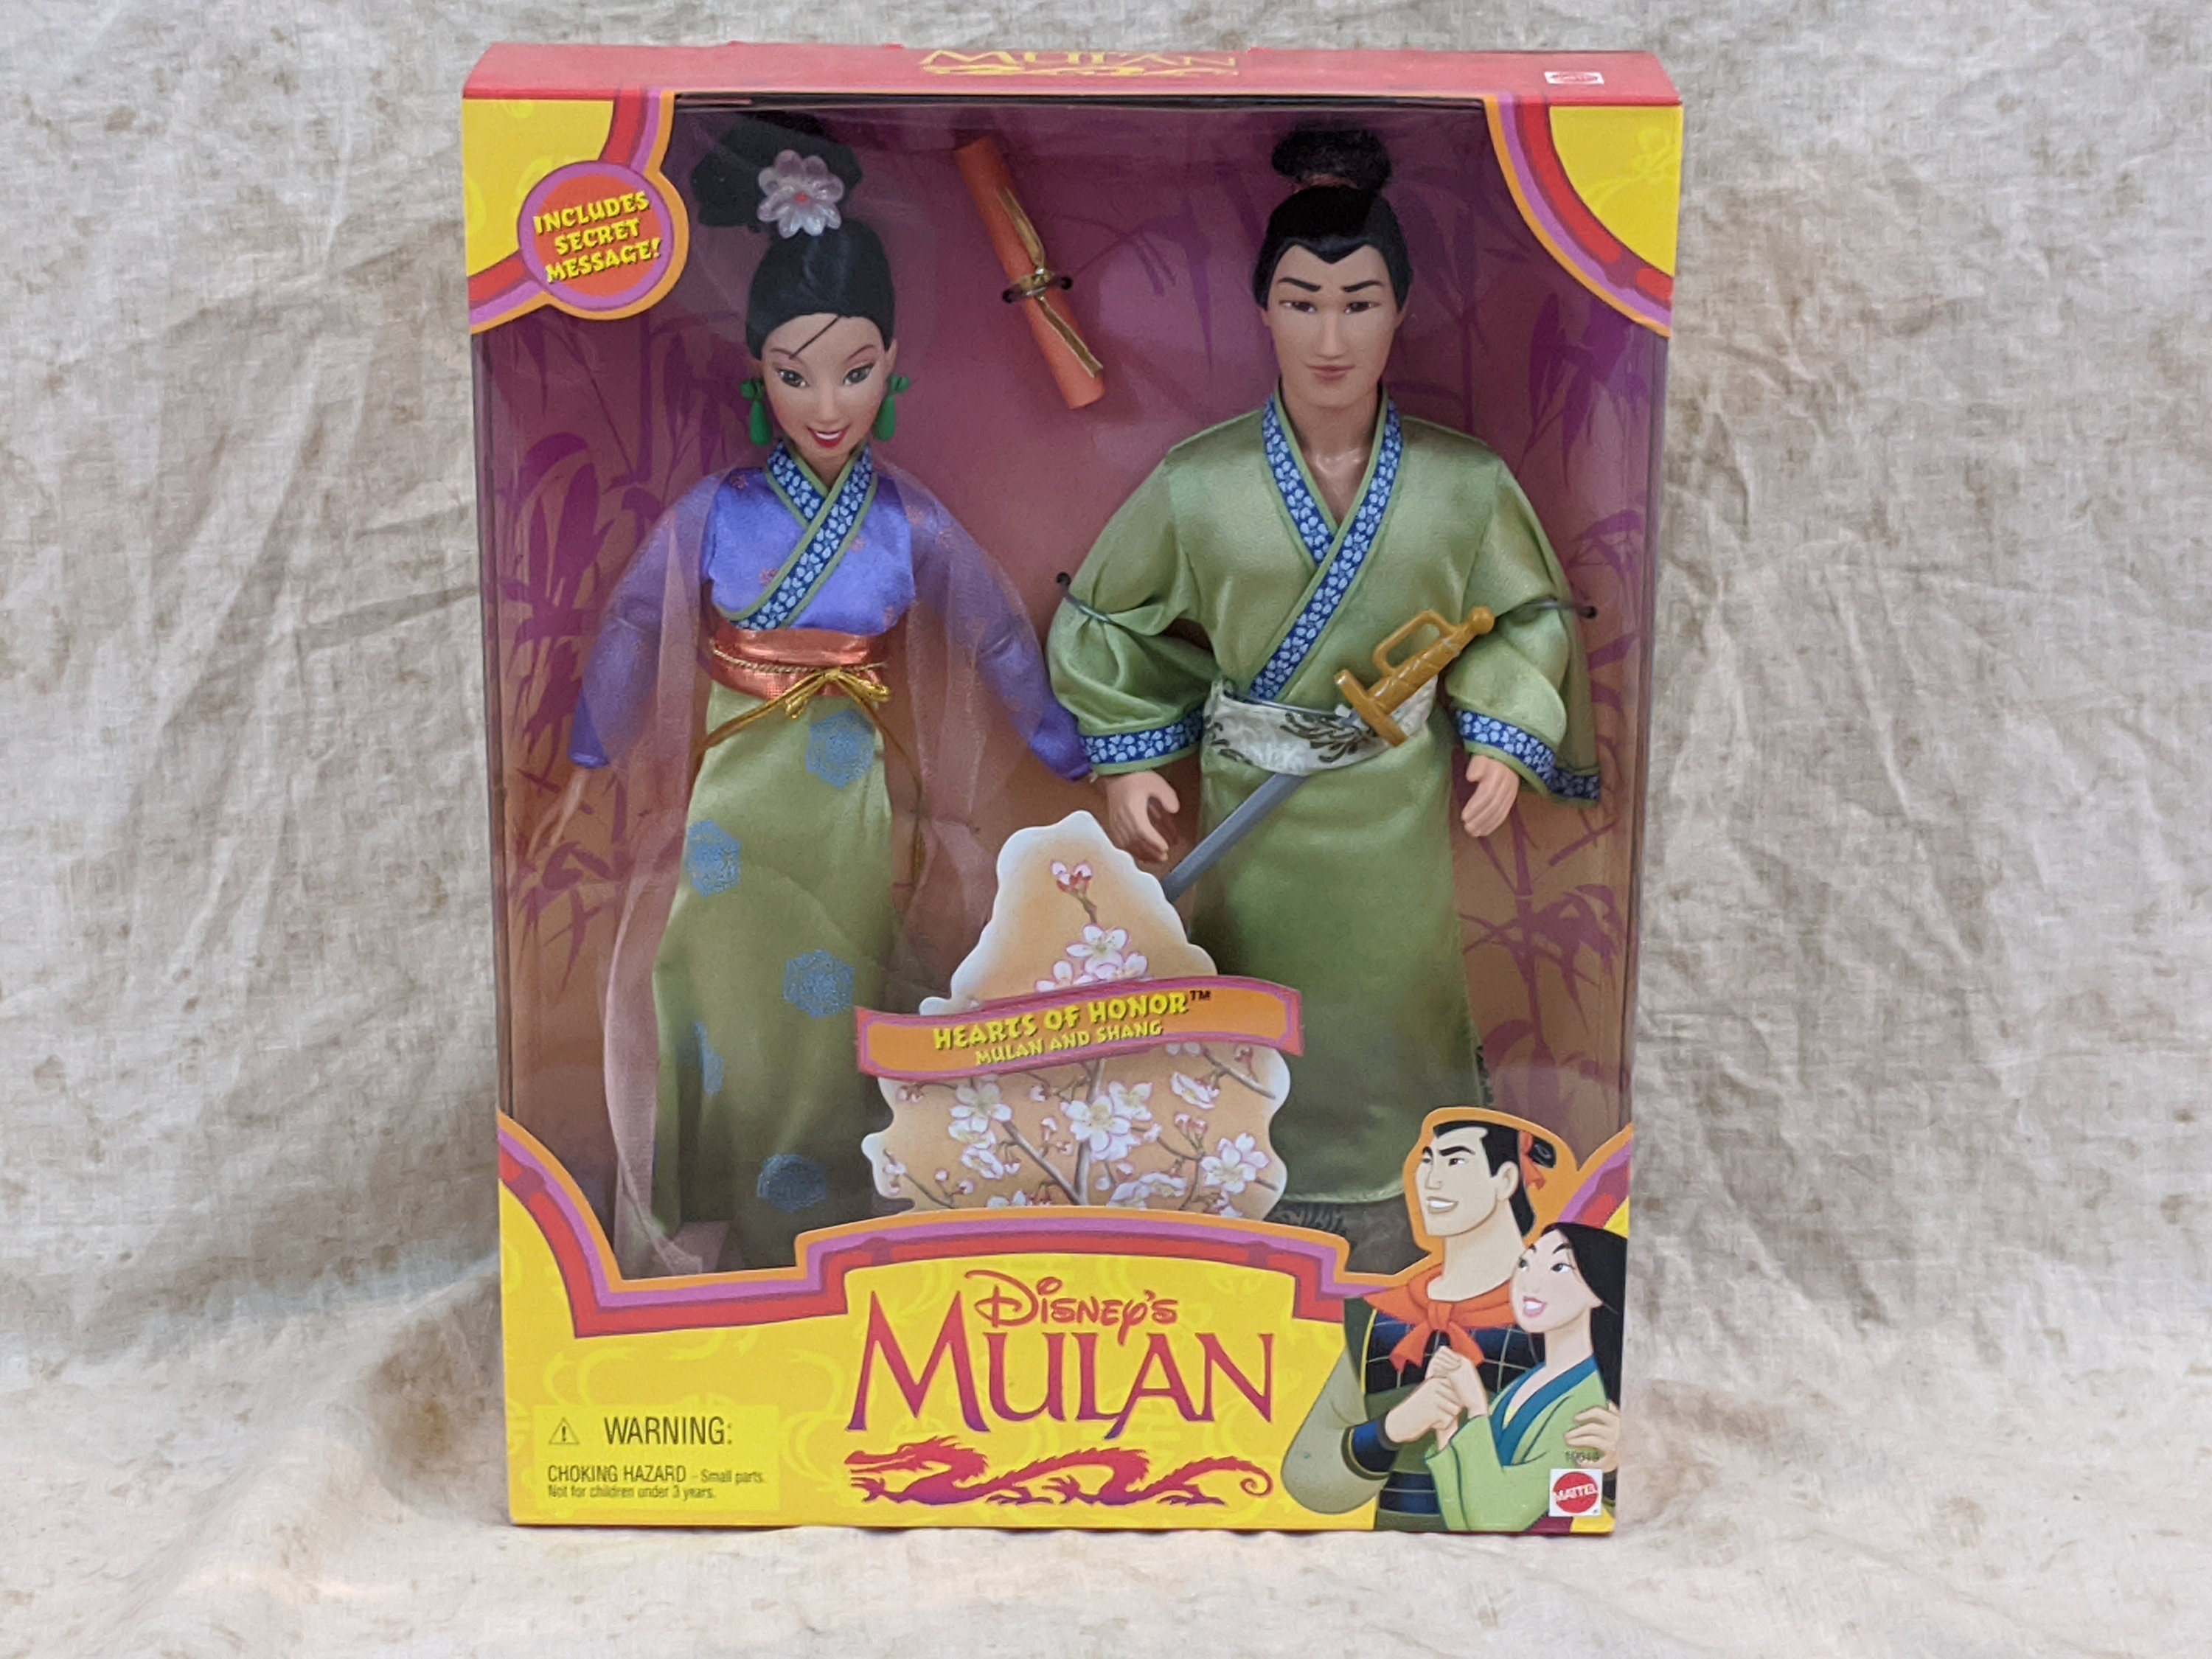 lote 2 muñecos pareja disney (mulan y li shang) - Acheter Poupées Barbie et  Ken sur todocoleccion